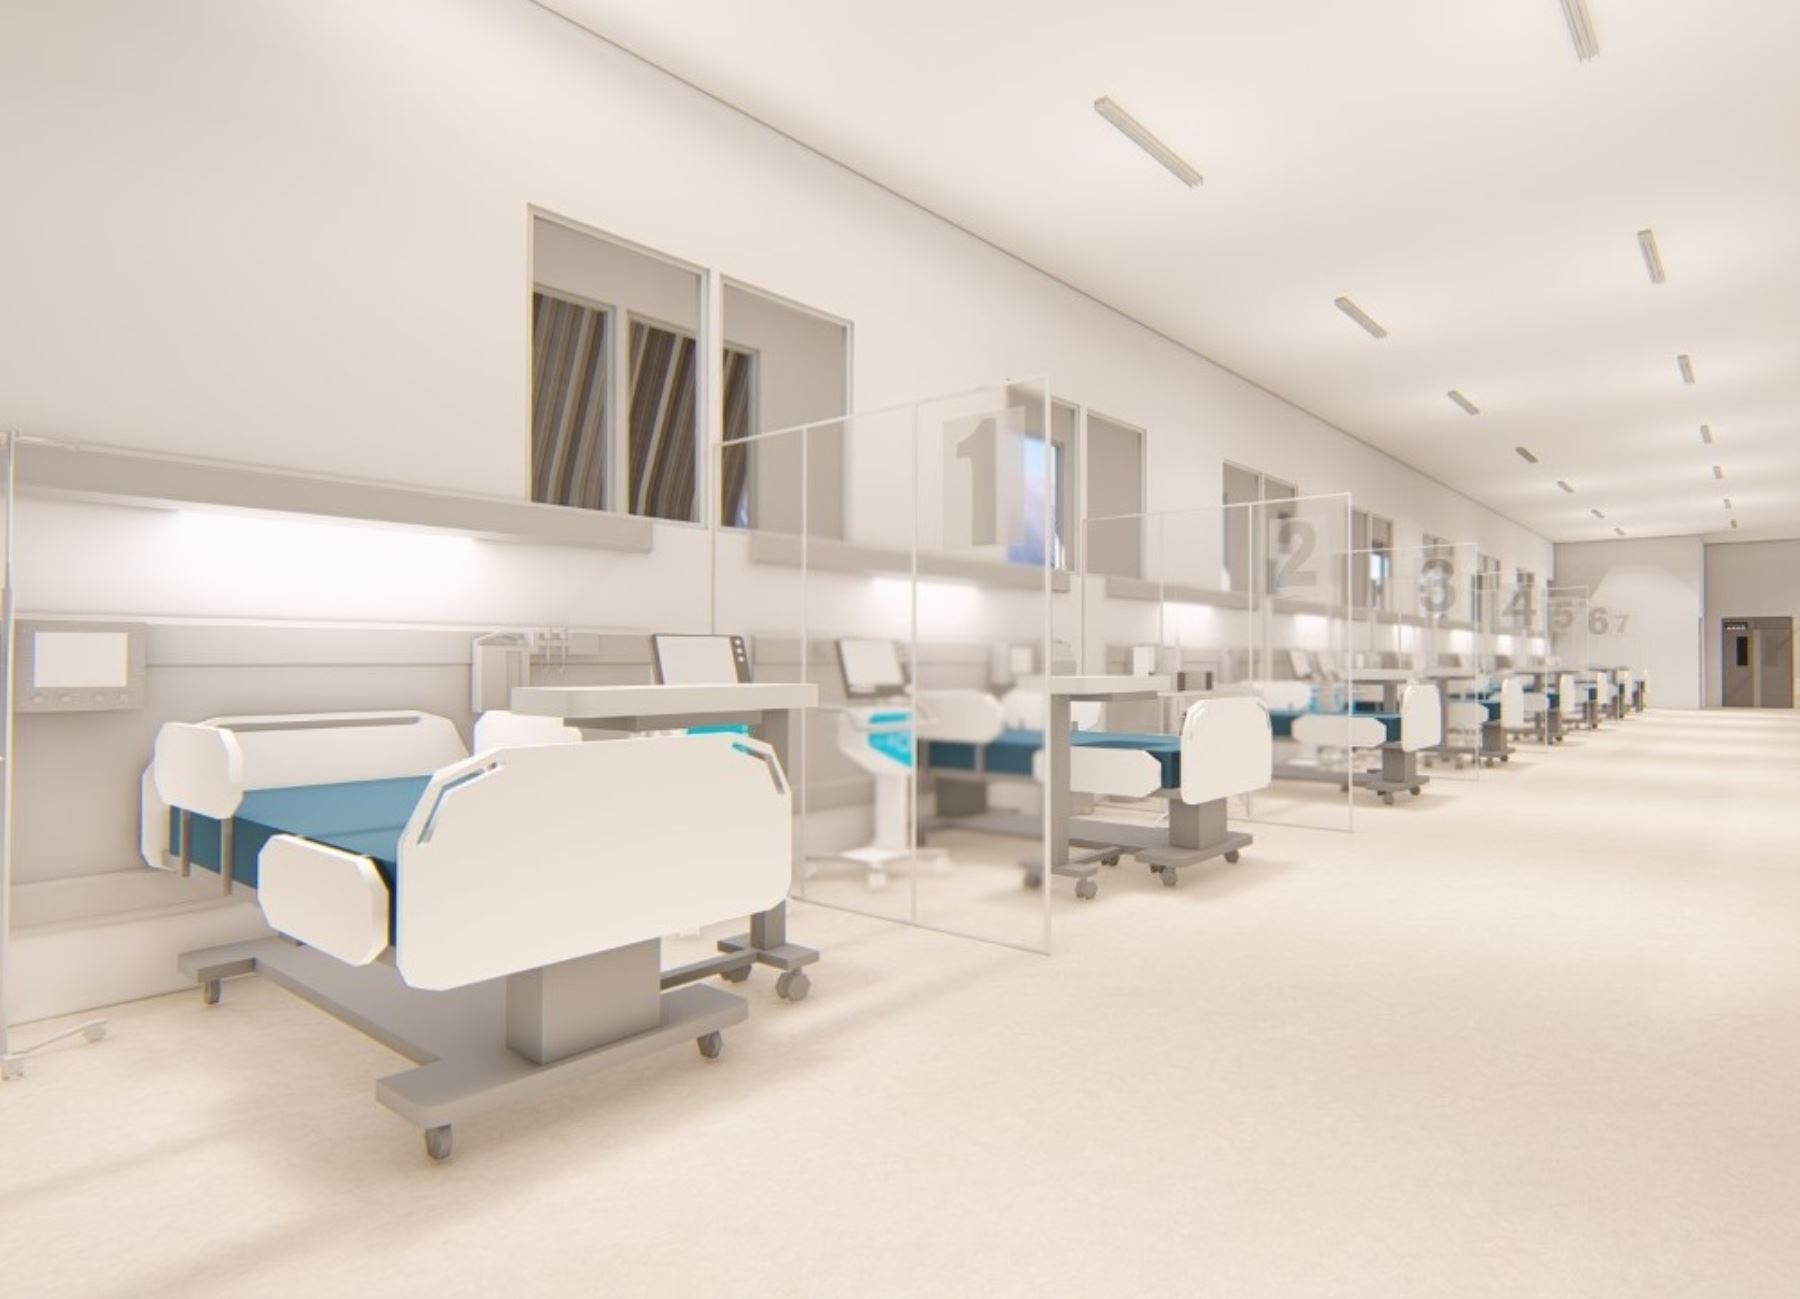 En la región Ica se instalará el primer piloto del sistema modular de establecimientos de salud que tendrá capacidad para 30 camas hospitalarias y servicio de emergencia, anunció el Ministerio de Salud. ANDINA/Difusión